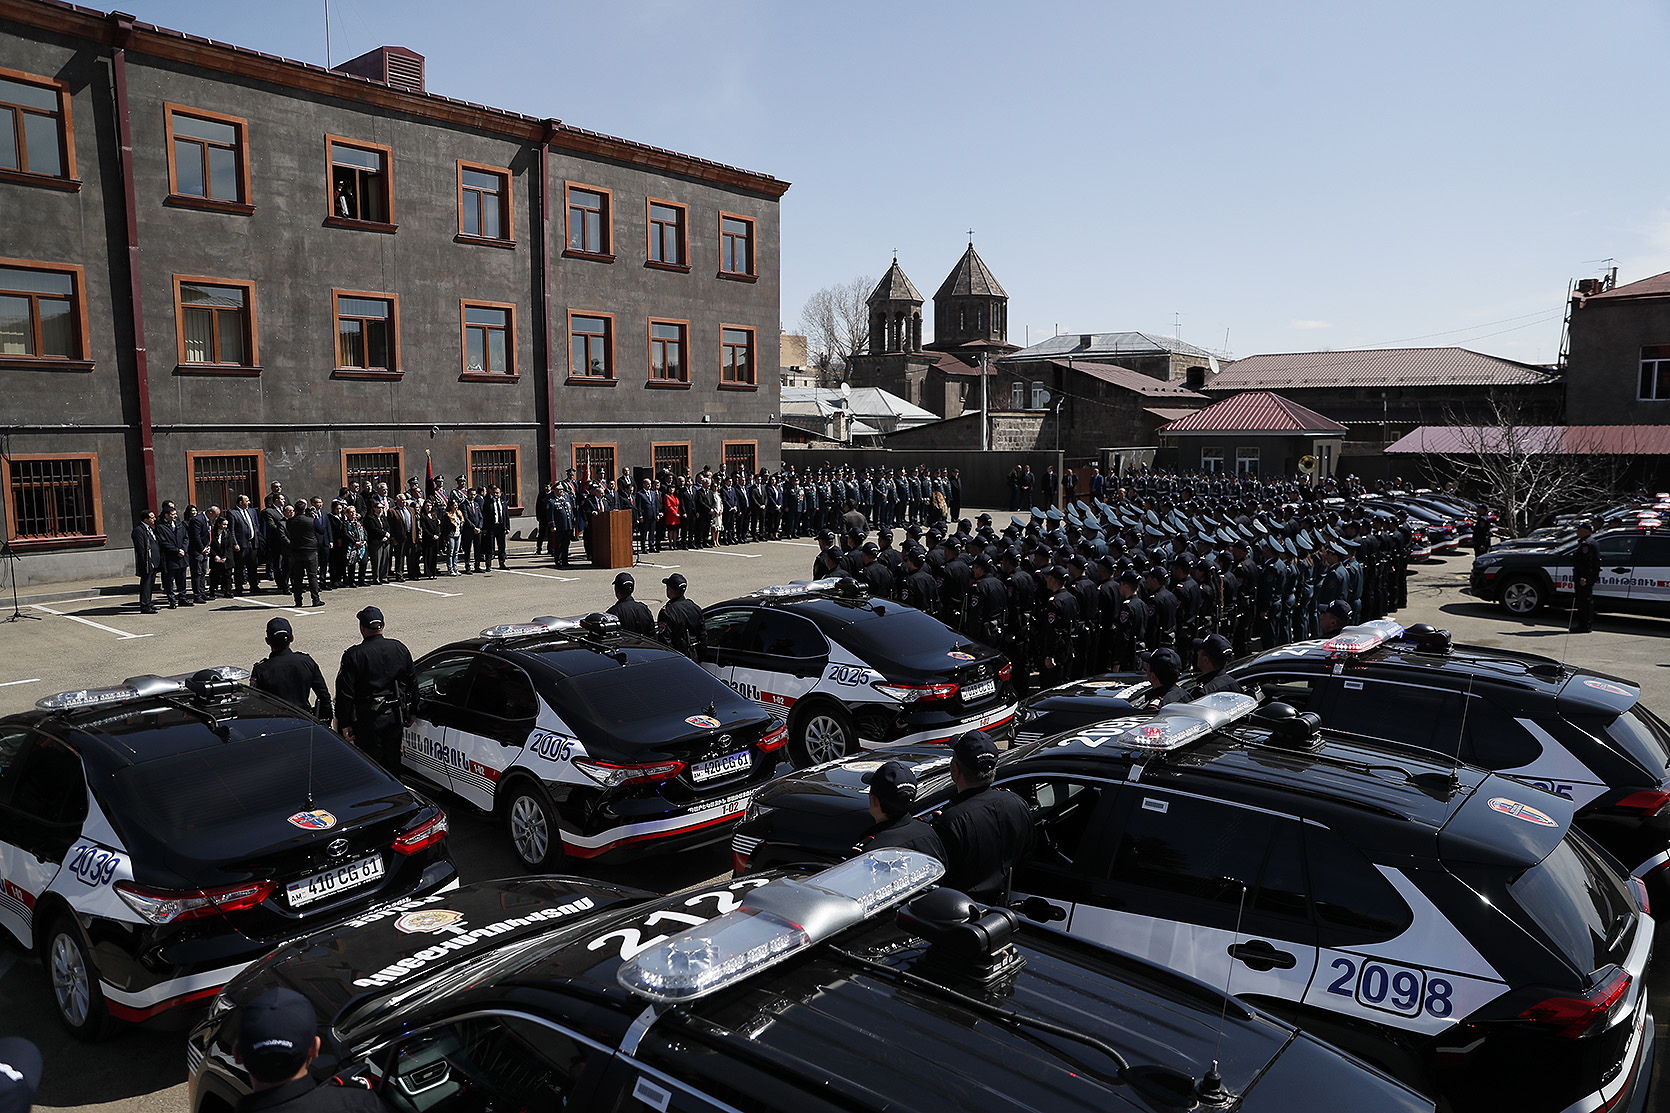 Կառավարությունը 3,1 միլիարդ դրամի պայմանագիր կկնքի «Տոյոտա Երևան»-ի հետ՝ պարեկայինների մեքենաների համար